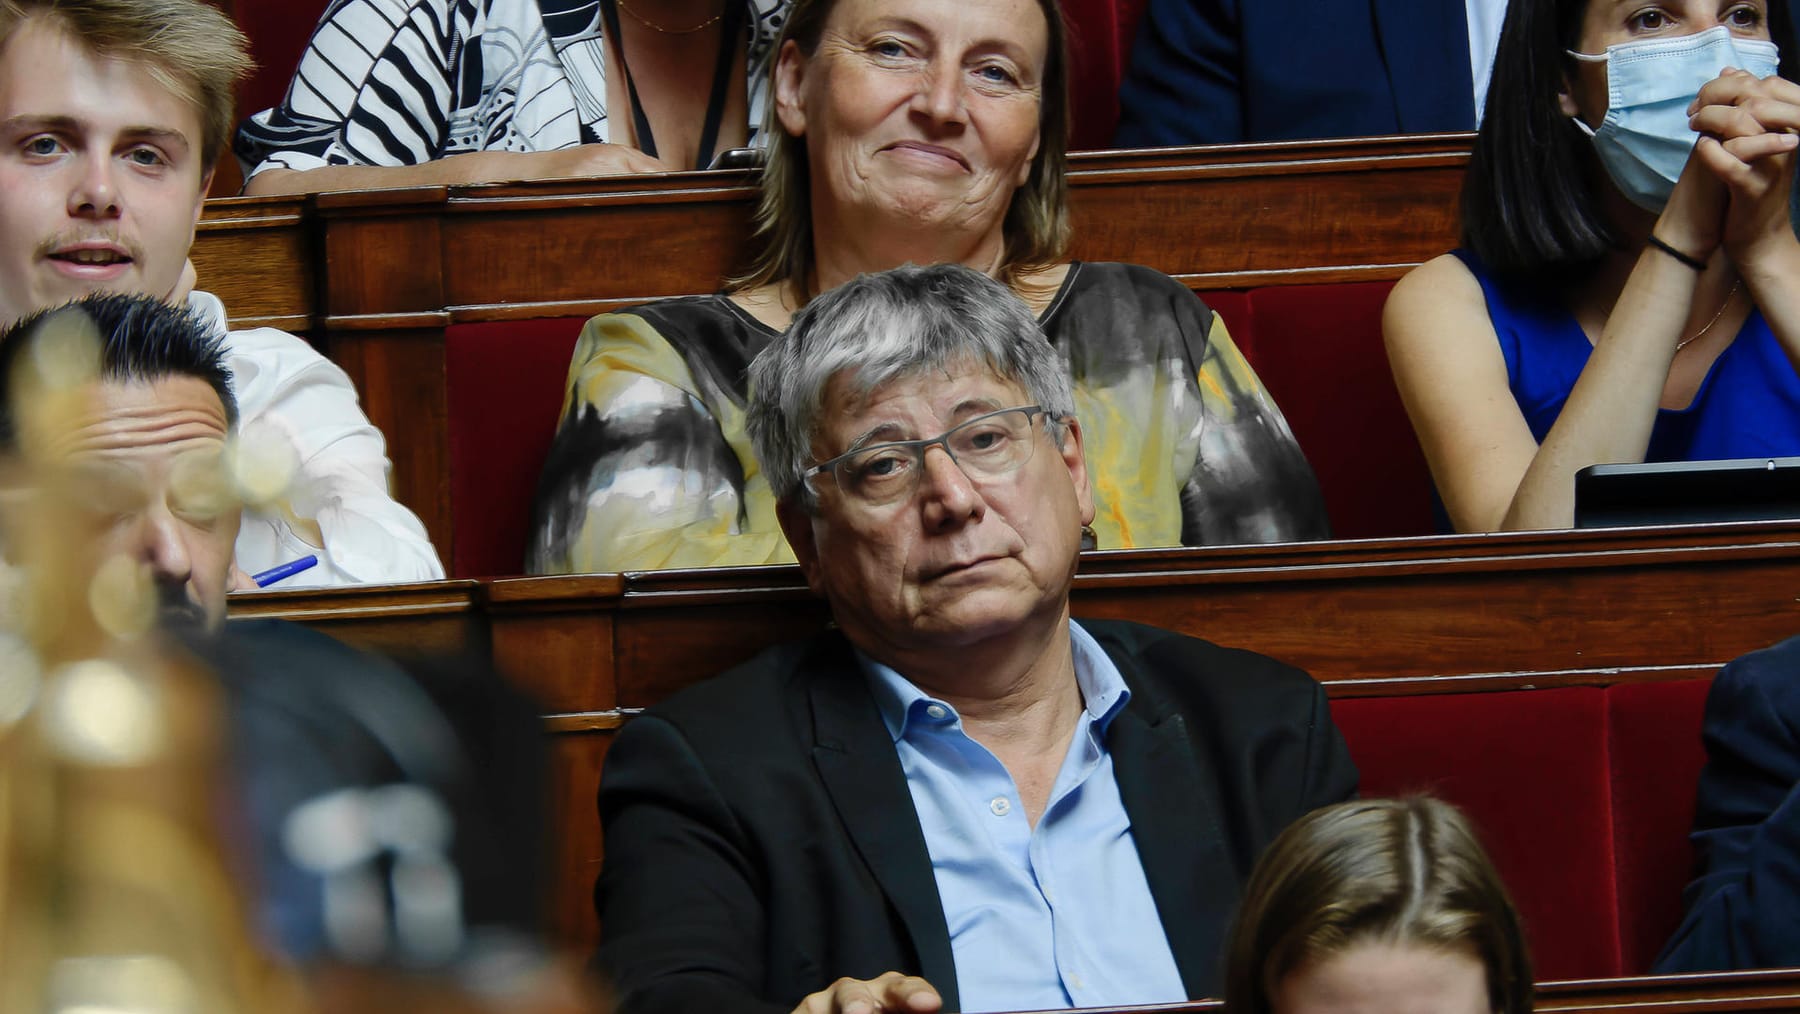 Les politiciens français discutent des « gauchistes sales et mal habillés »